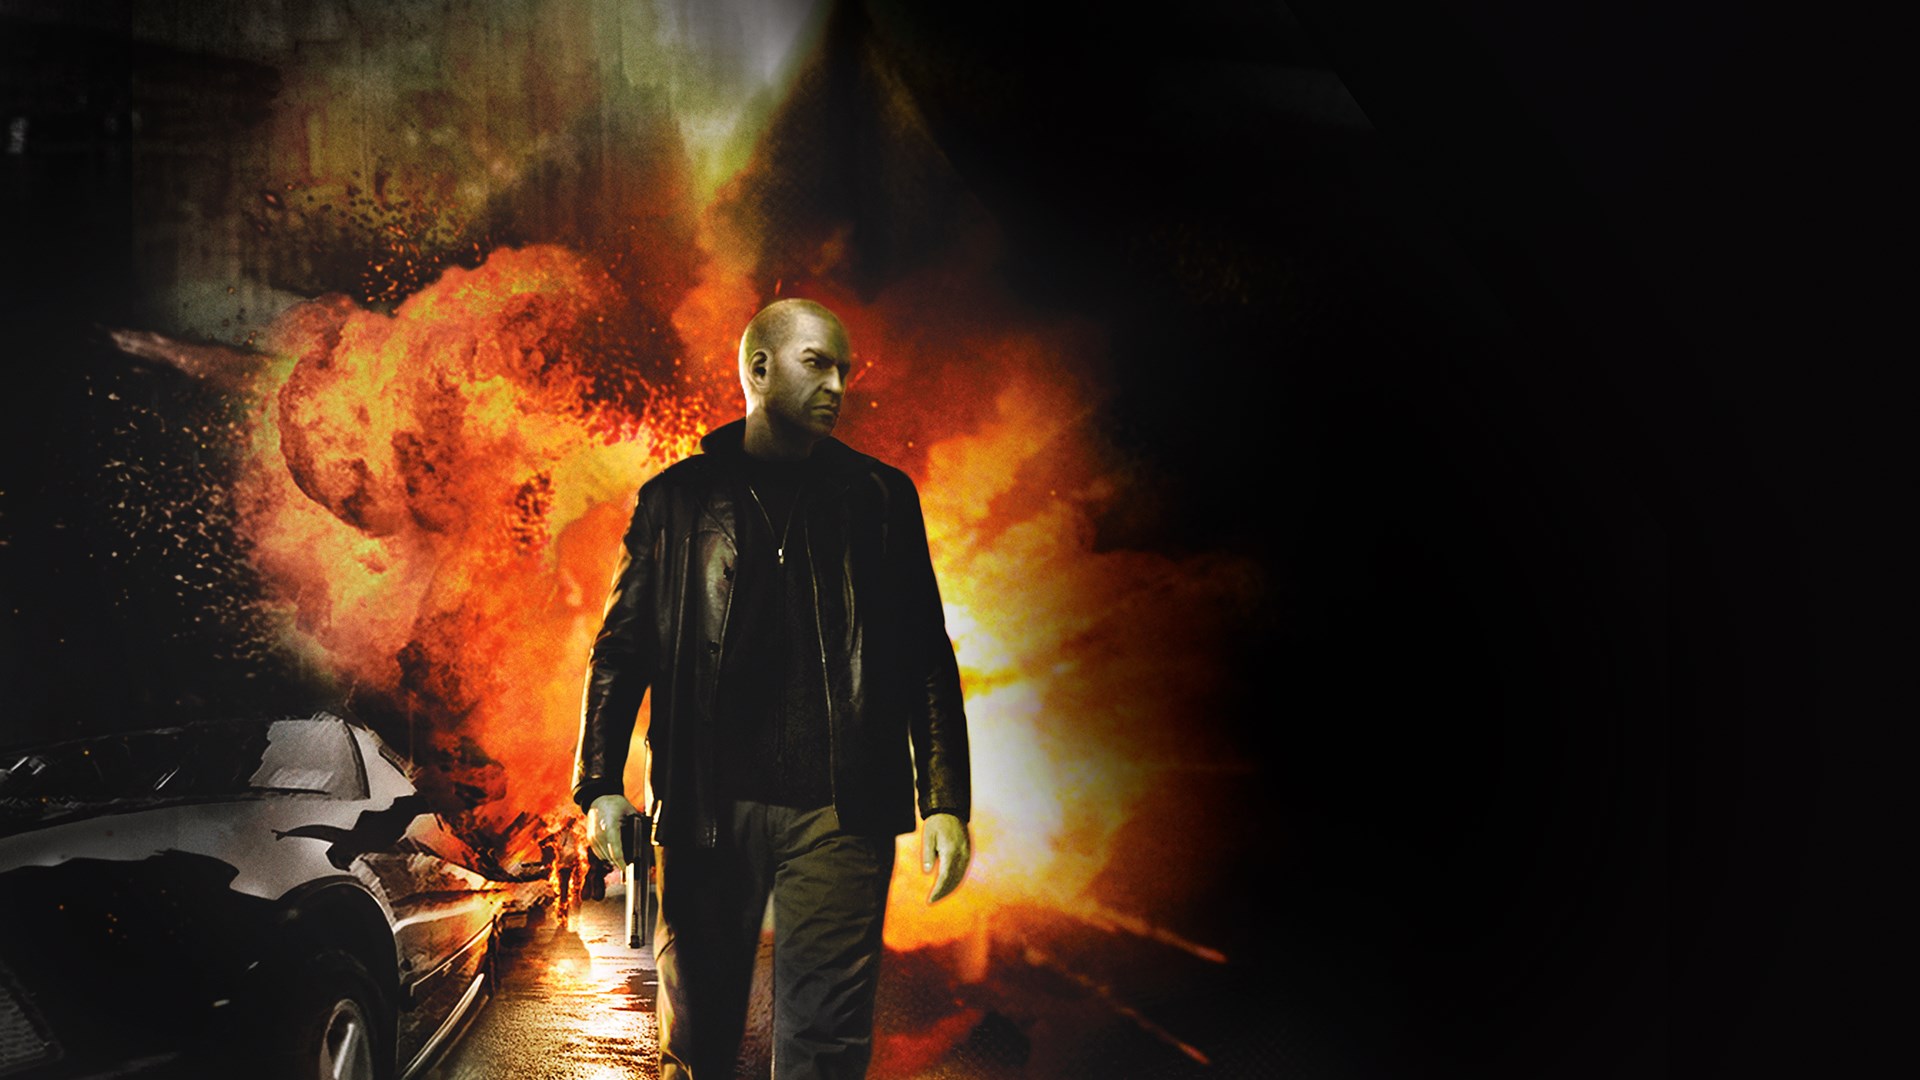 Buy Tom Clancy's Splinter Cell® Double Agent™ - Microsoft Store en-IL